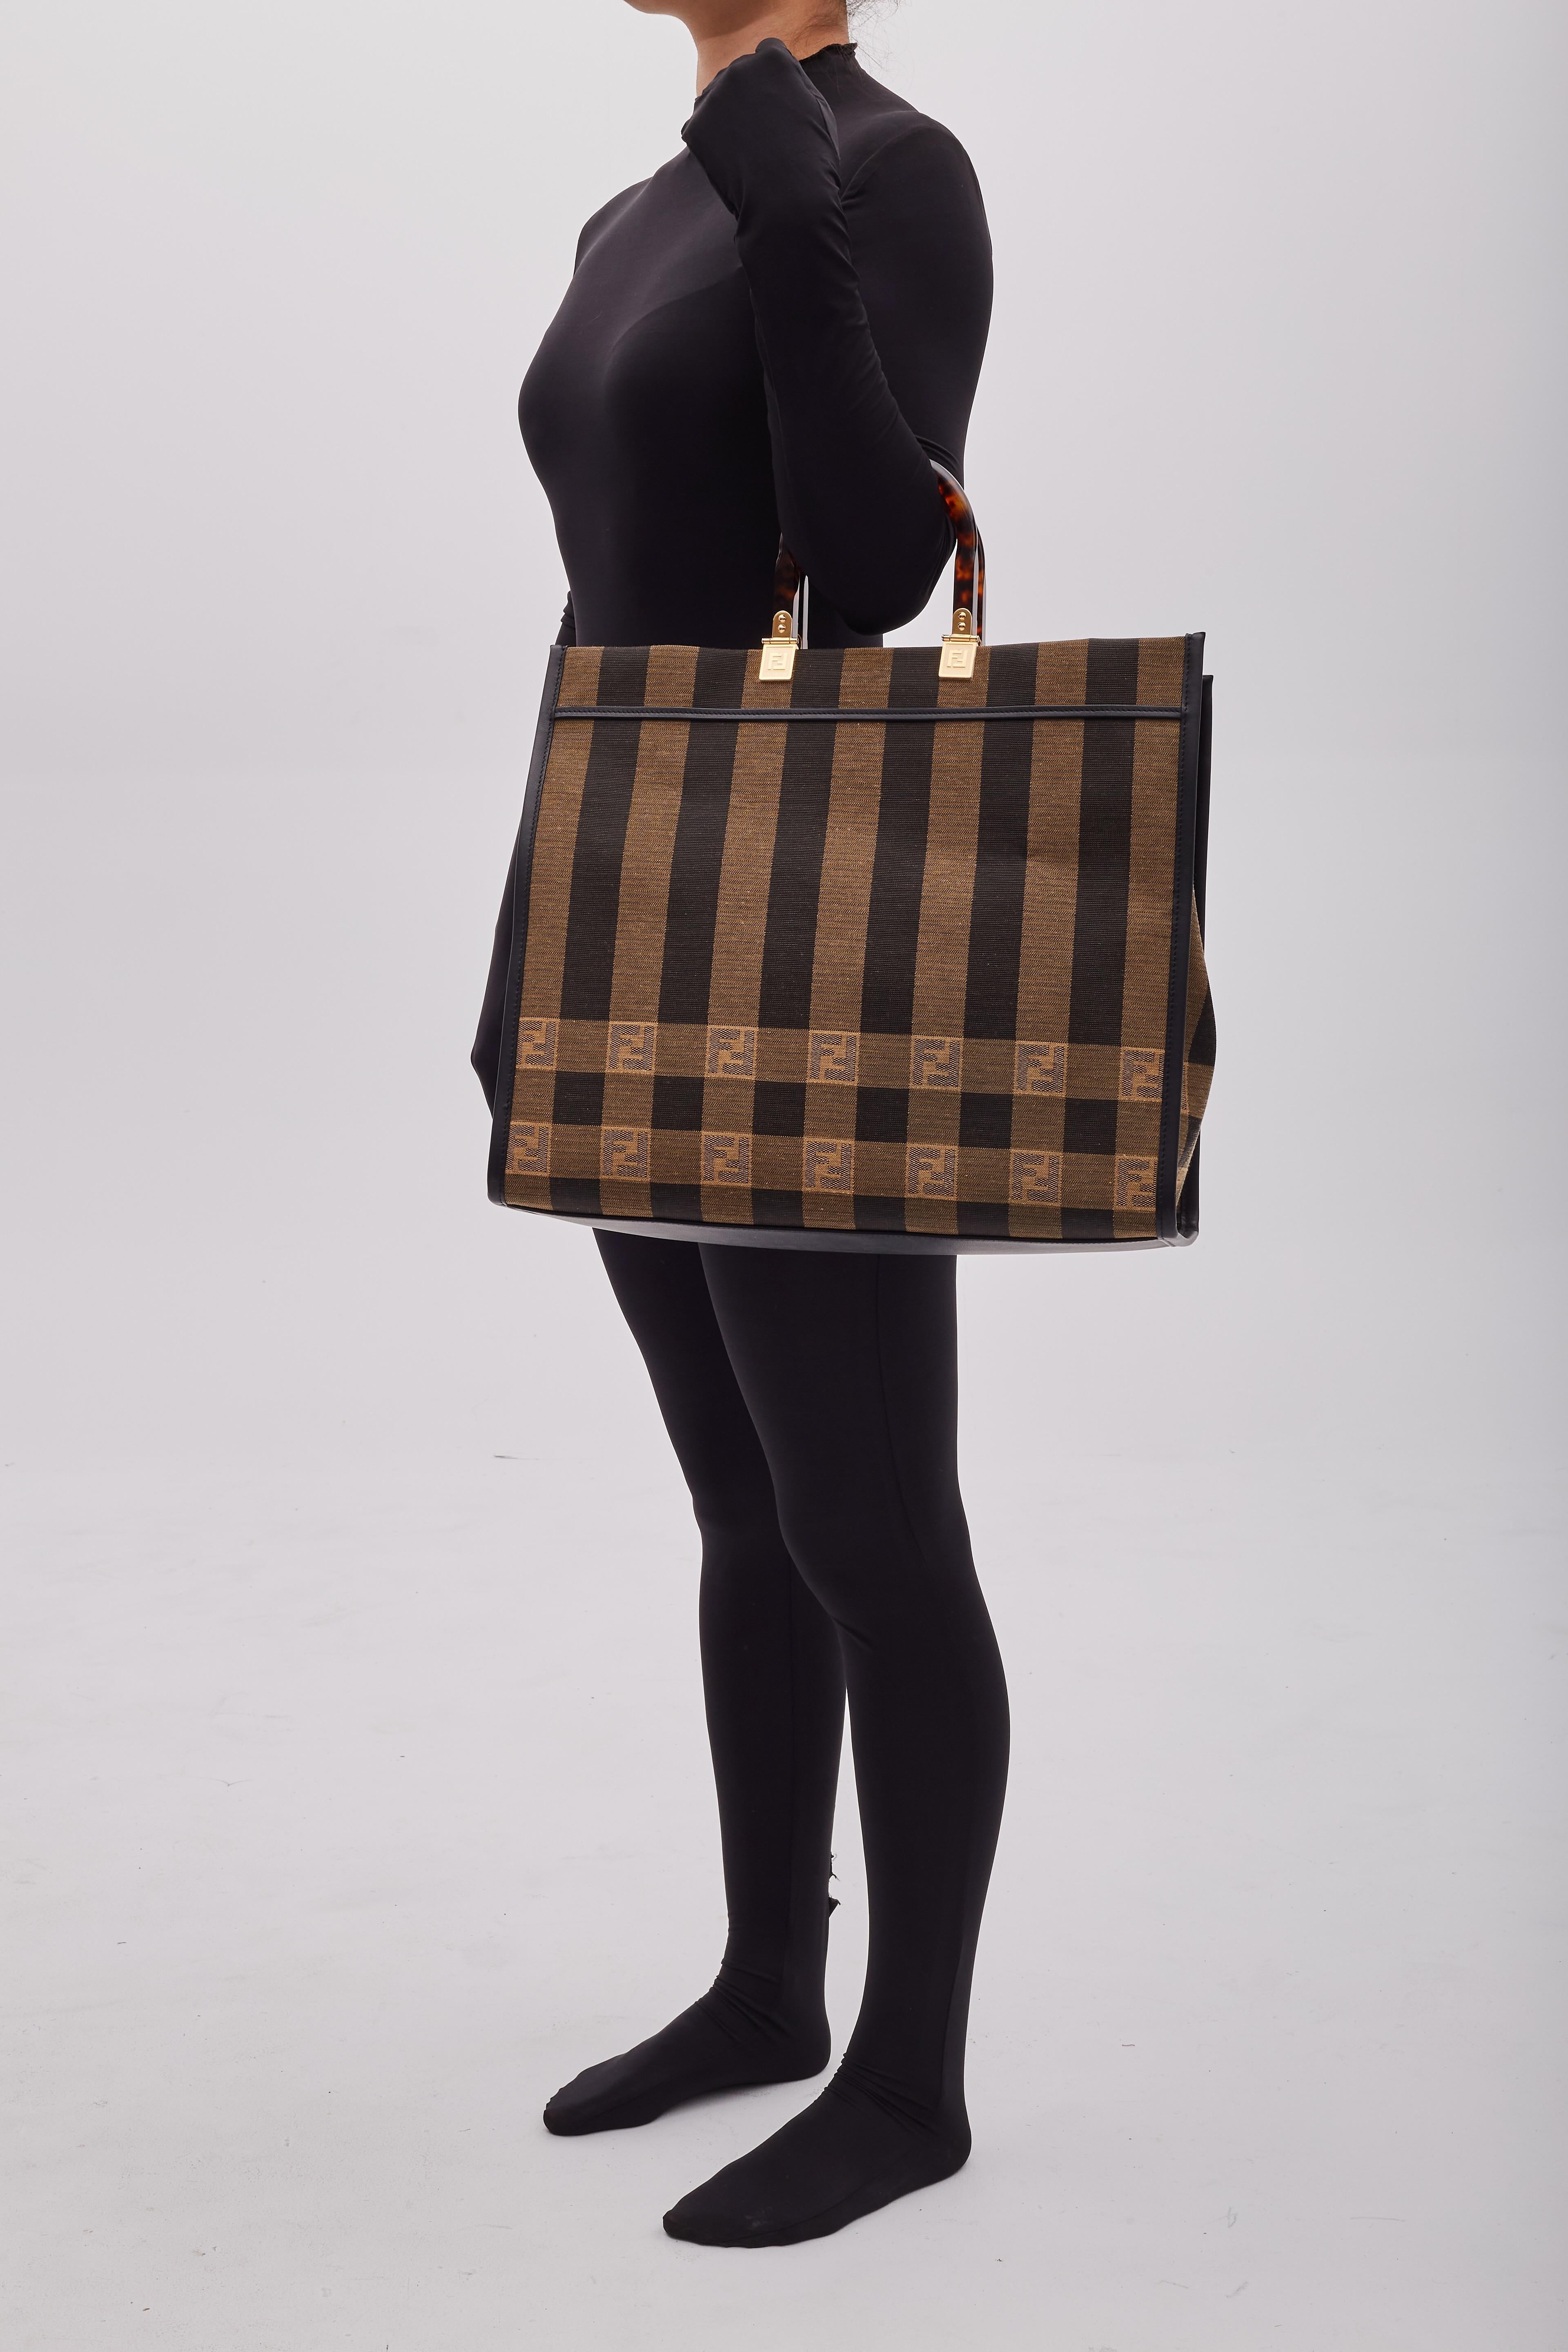 Ce cabas Fendi est confectionné en tissu rayé jacquard vichy avec des bordures en cuir noir. Le sac présente des poignées supérieures en écaille de résine, des ferrures dorées, un couvercle ouvert et un intérieur spacieux avec une poche à fermeture